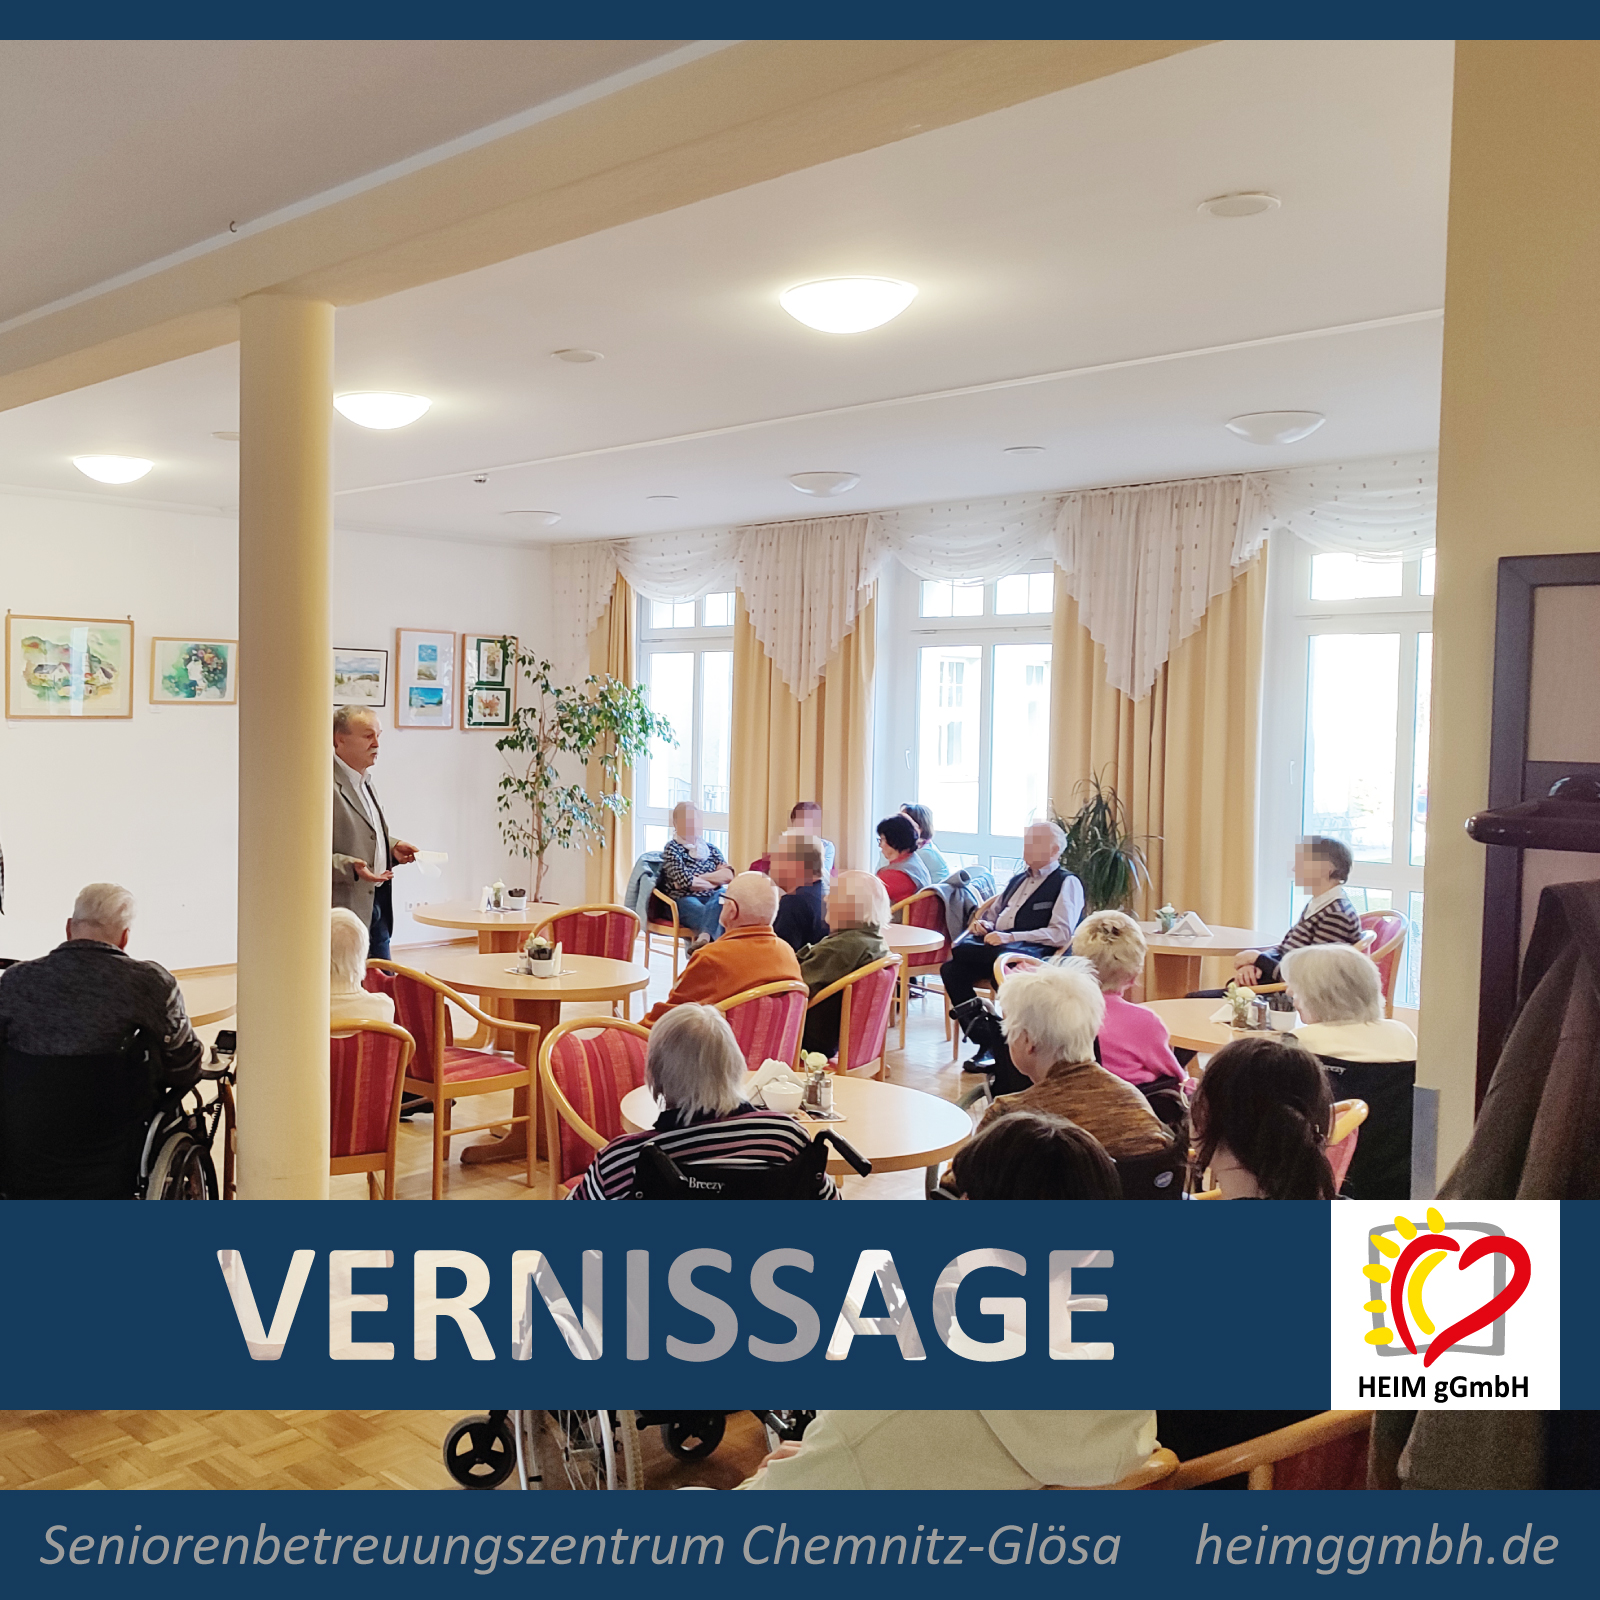 Tradition zum 16. Mal: Kunst-Vernissage im Seniorenbetreuungszentrum Chemnitz-Glösa der HEIM gemeinnützigen GmbH